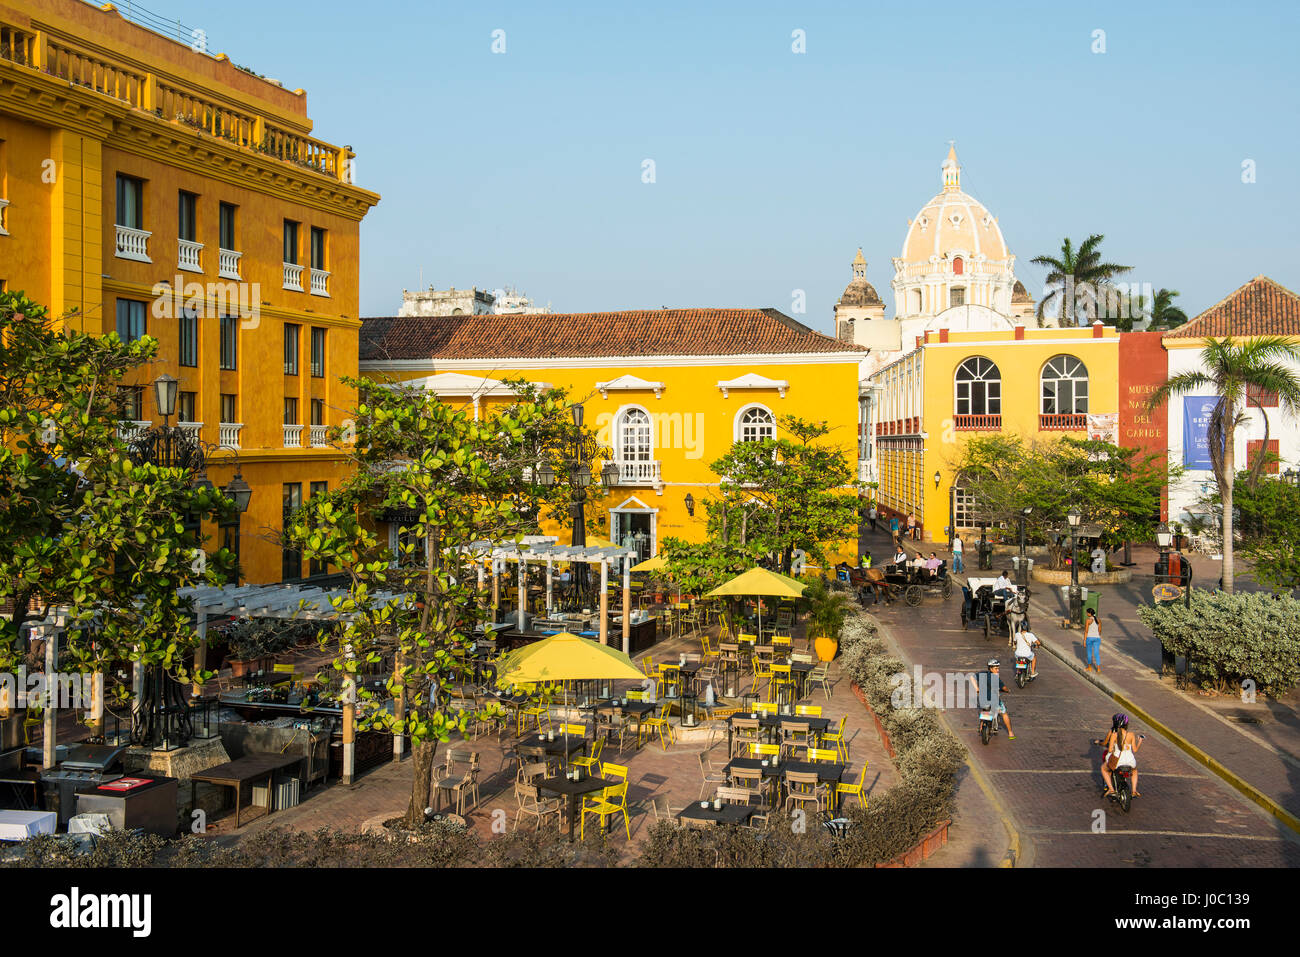 L'architecture coloniale sur la Plaza de Santa Teresa, dans le site du patrimoine mondial de l'UNESCO, Carthagène, Colombie Banque D'Images